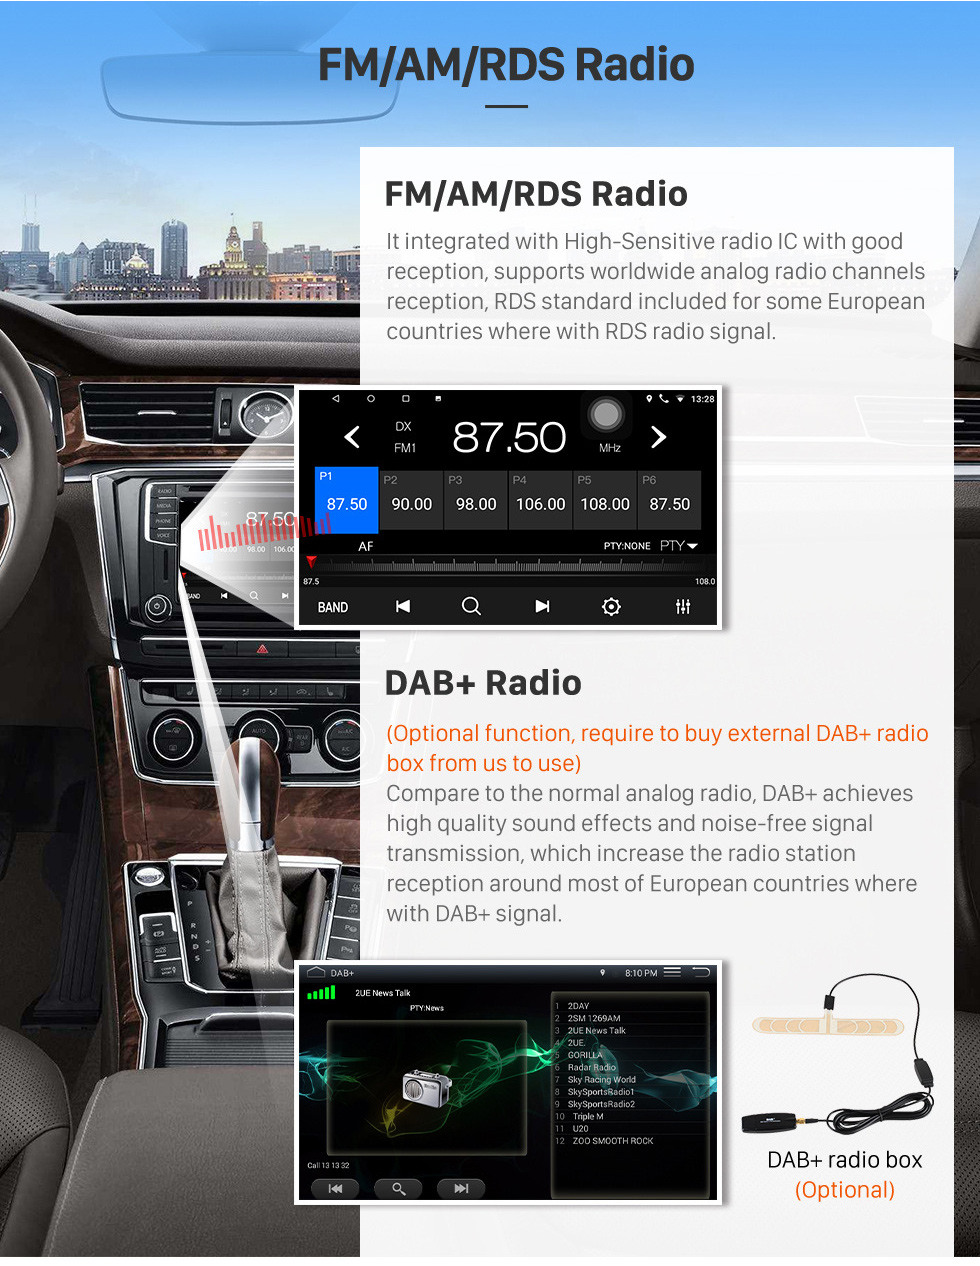 Seicane OEM 9 pouces Android 10.0 Radio pour 2013-2017 Suzuki Wagon R X5 Bluetooth HD à écran tactile GPS Navigation support Carplay caméra arrière